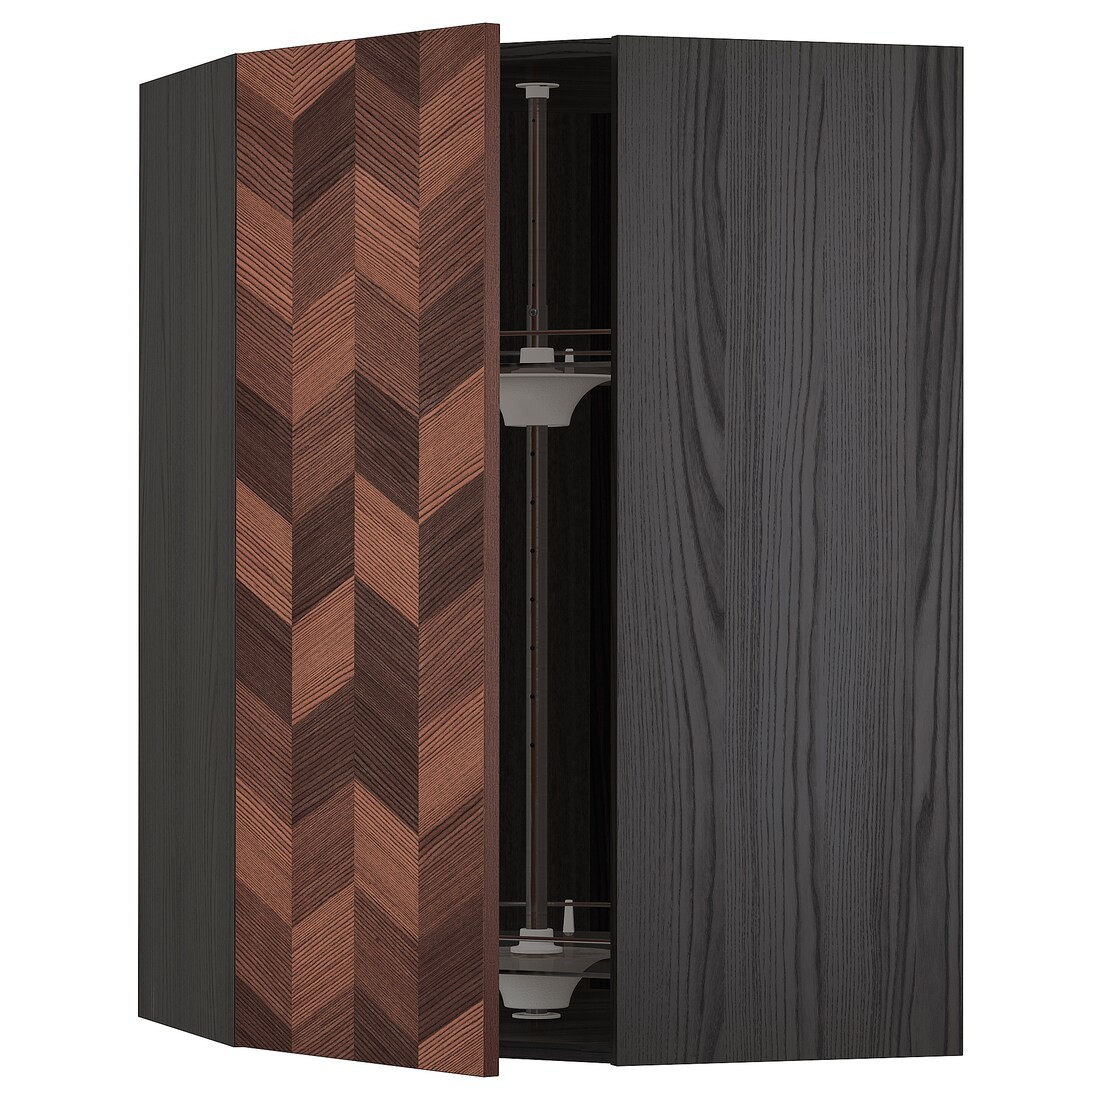 METOD МЕТОД Угловой навесной шкаф с каруселью, черный Hasslarp / коричневый узор, 68x100 см